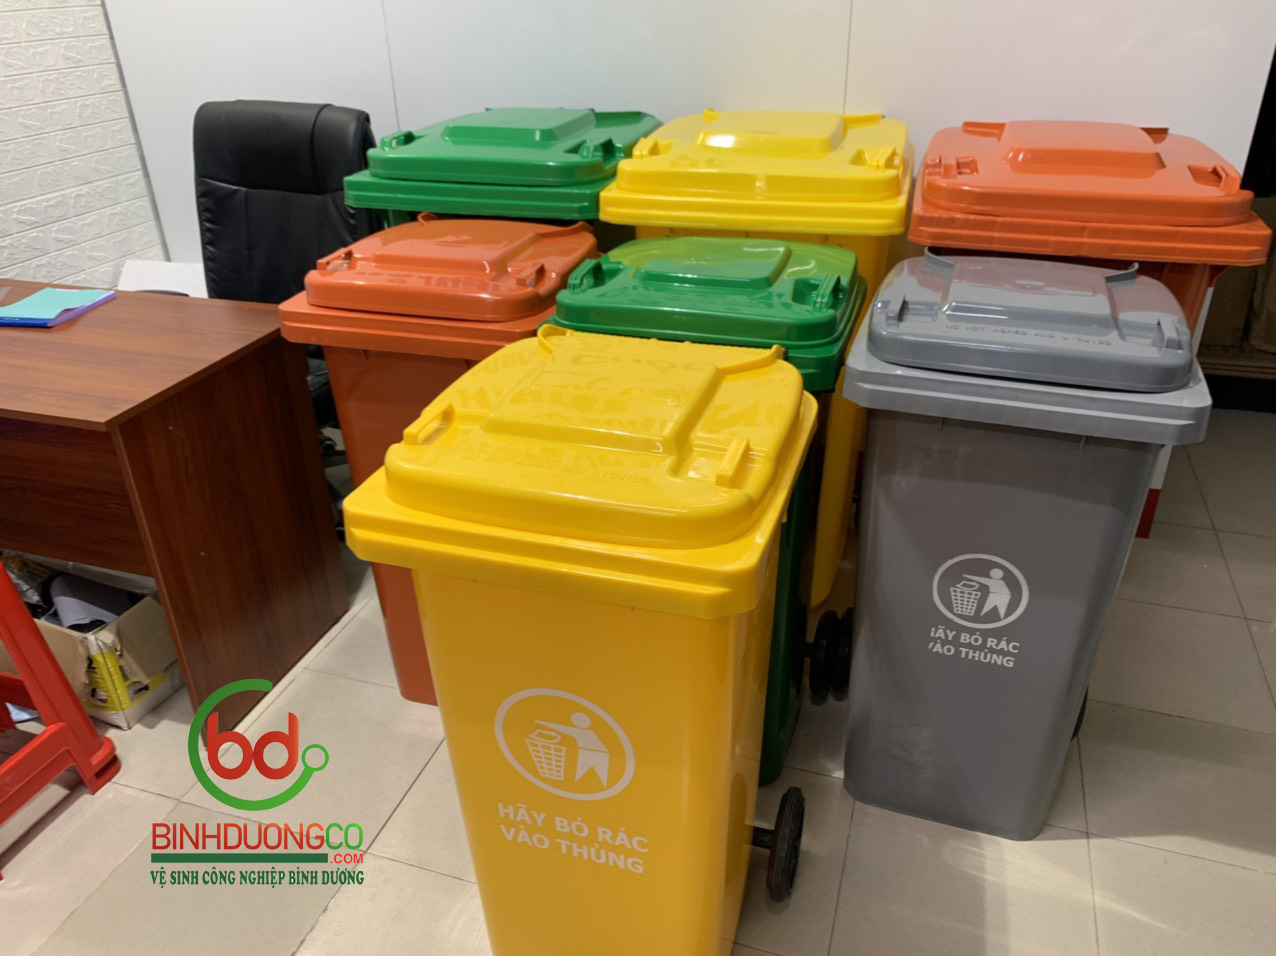 Tại sao nên dùng thùng rác công cộng?